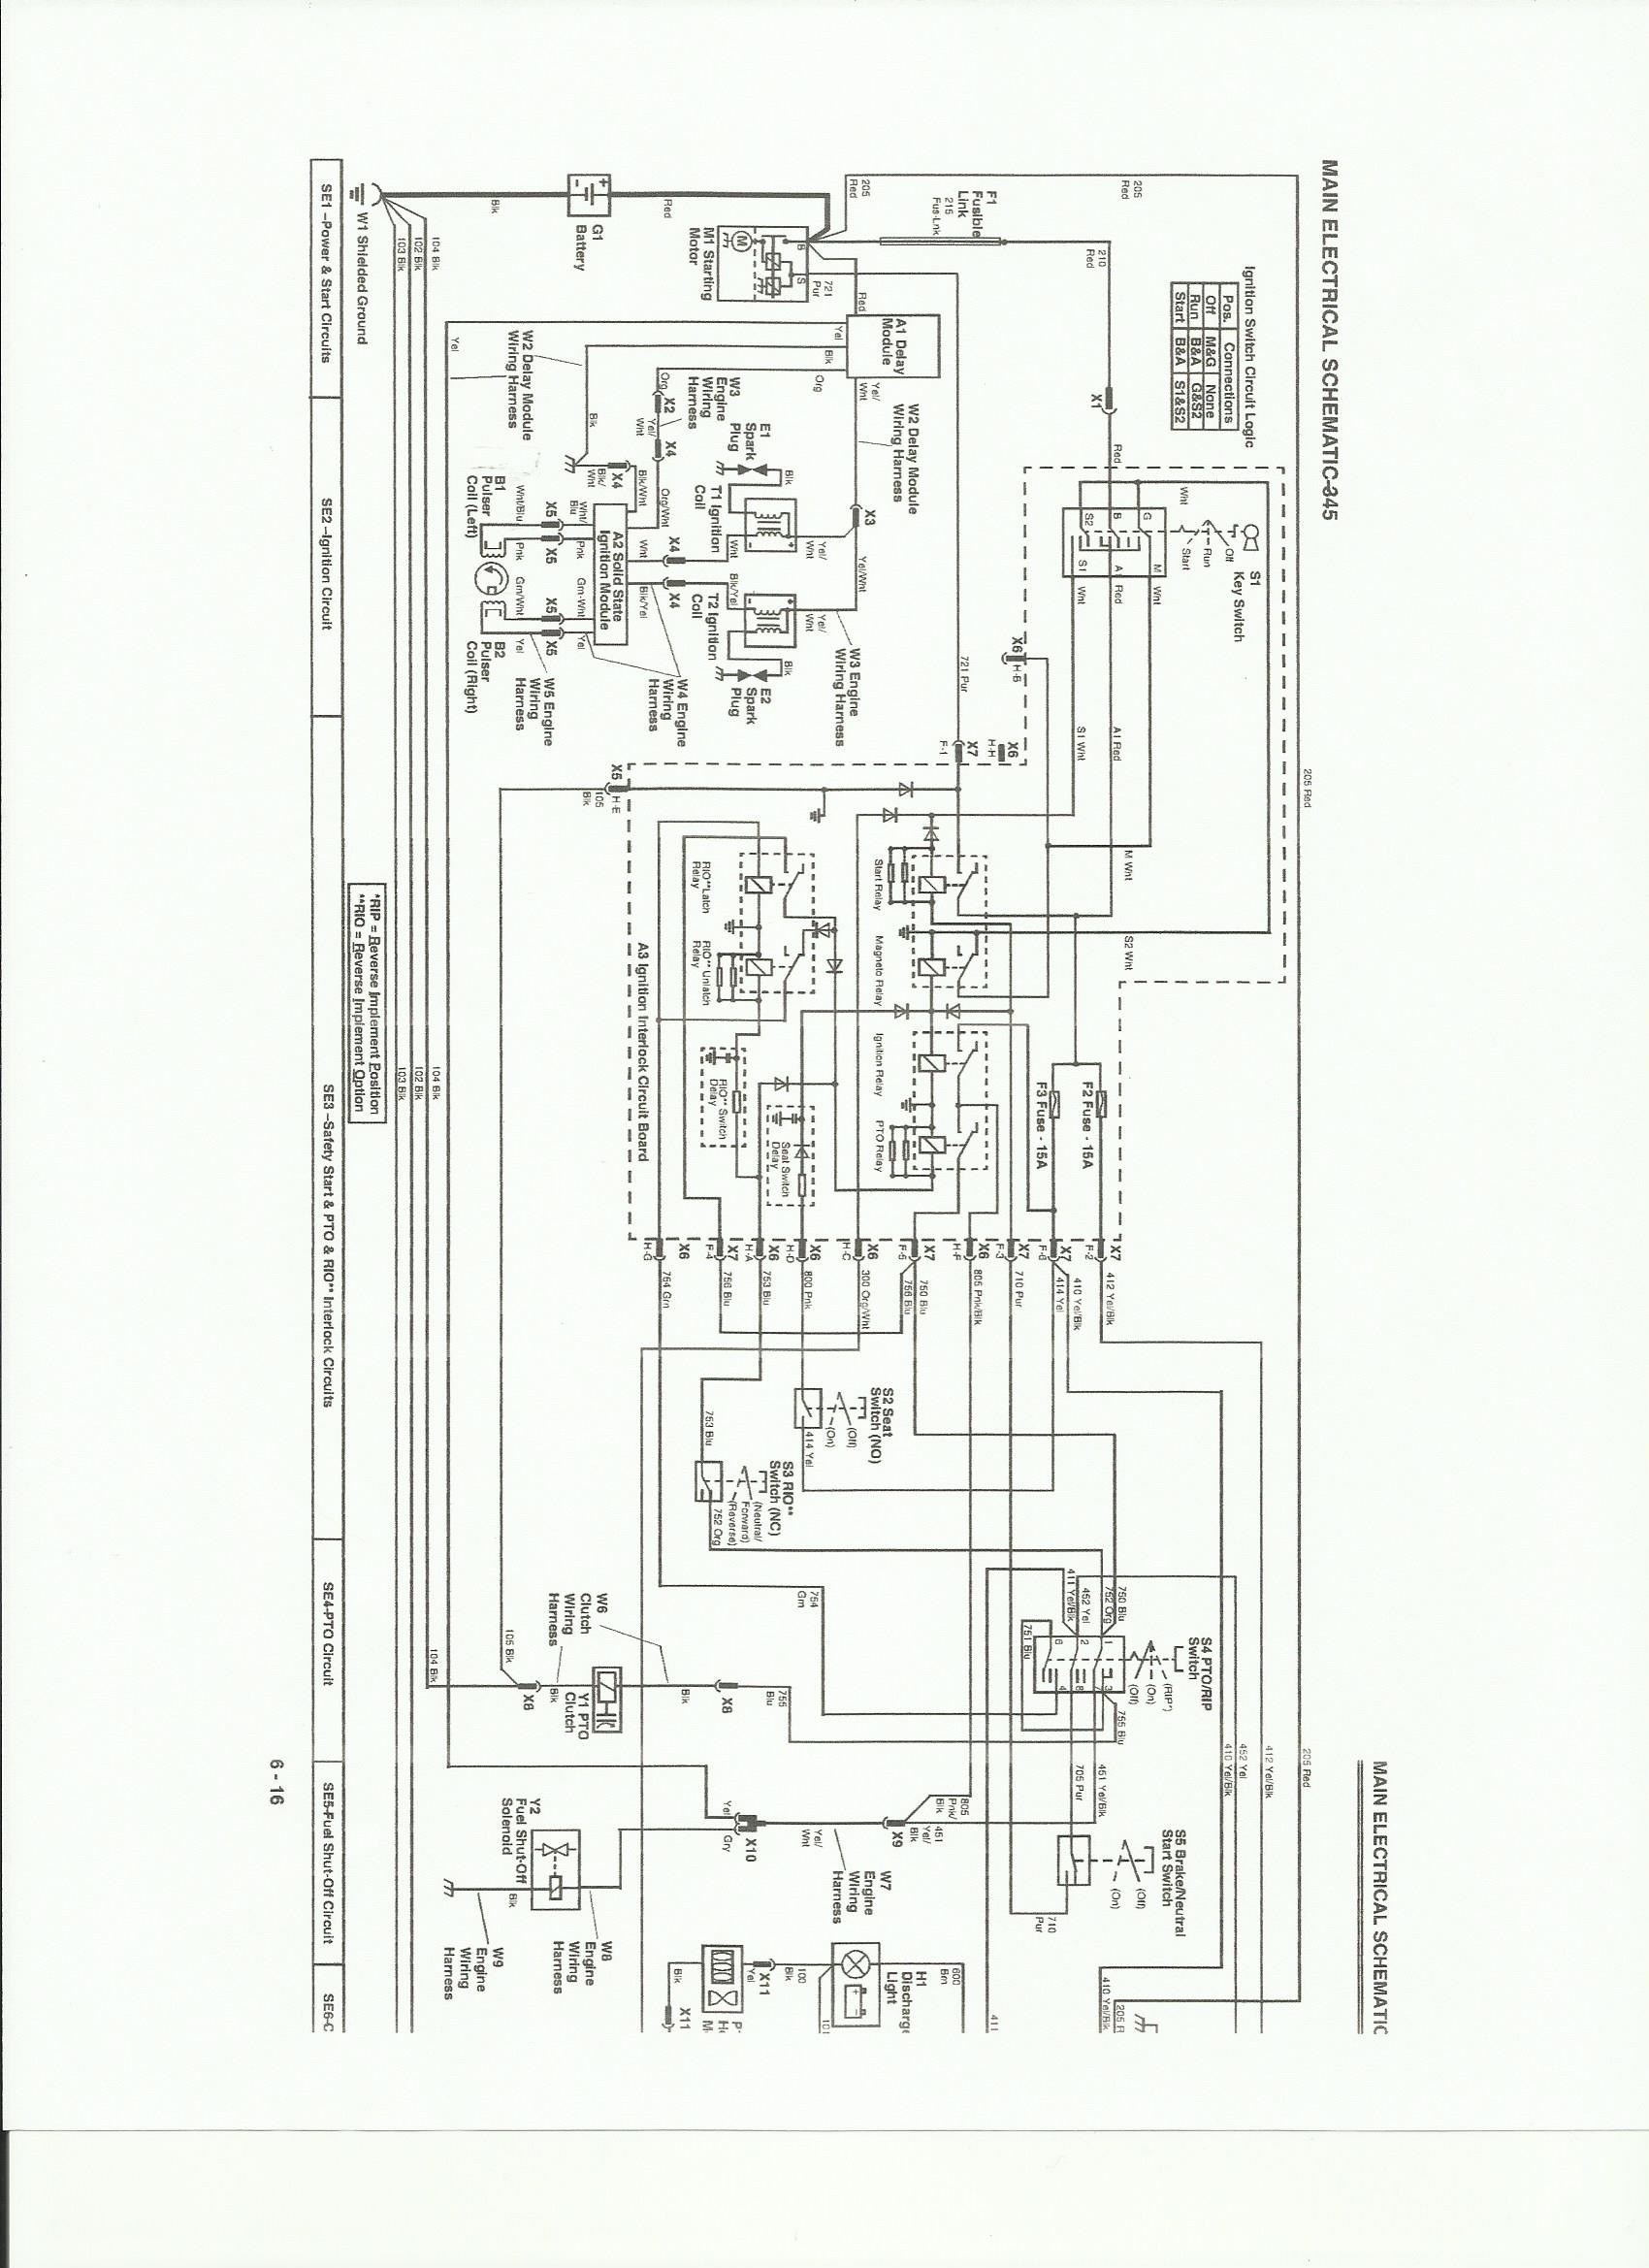 John Deere 345 Electrical Schematic 4726 John Deere 345 Engine Wiring Schematic